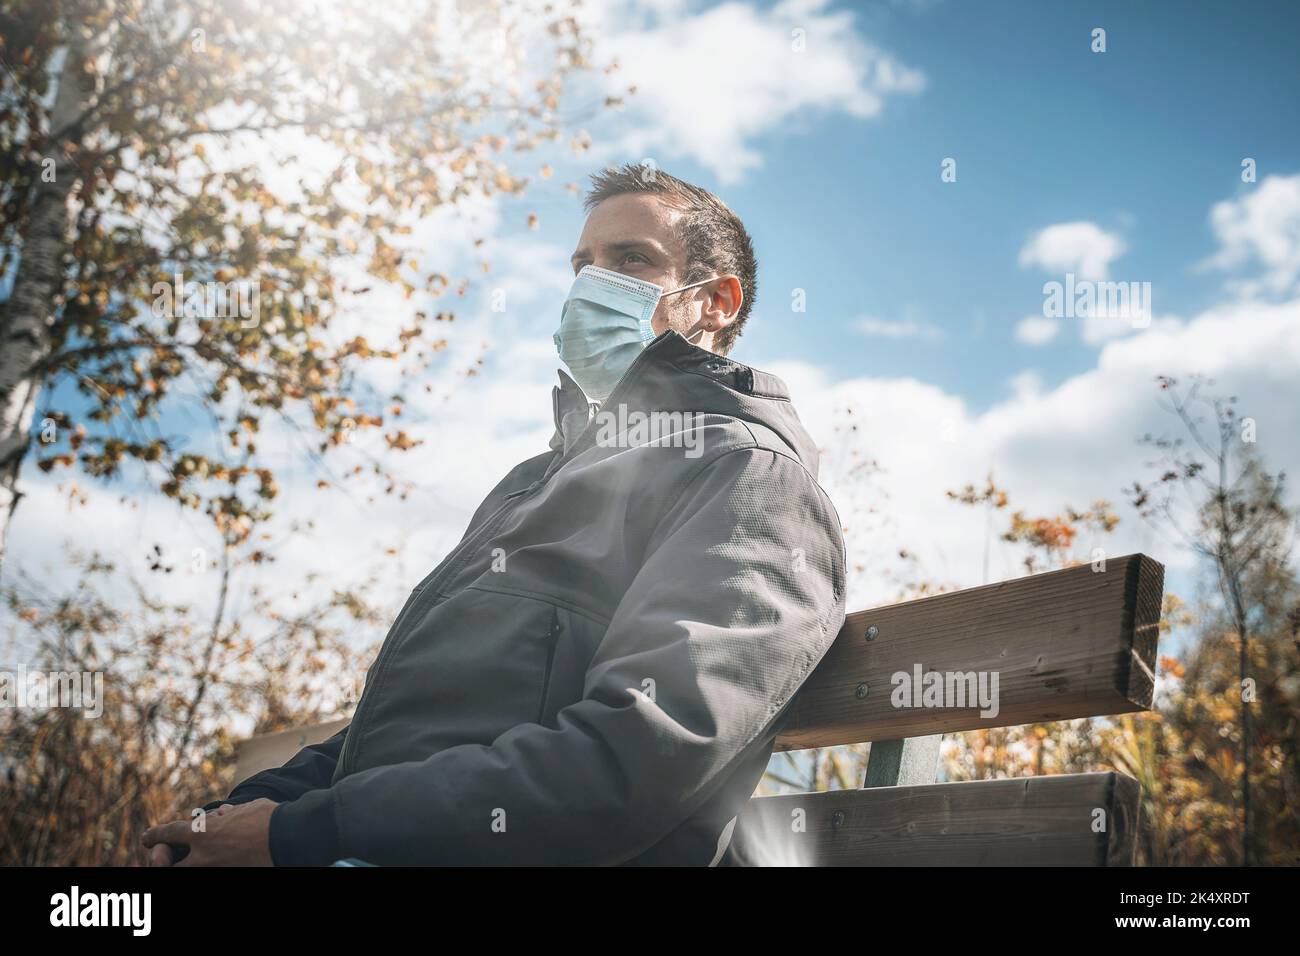 03 de octubre de 2022: Joven con máscara protectora en un banco de parque en otoño, Máscara para protegerse del virus Corona, Covid 19. Imagen de símbolo Corona Foto de stock